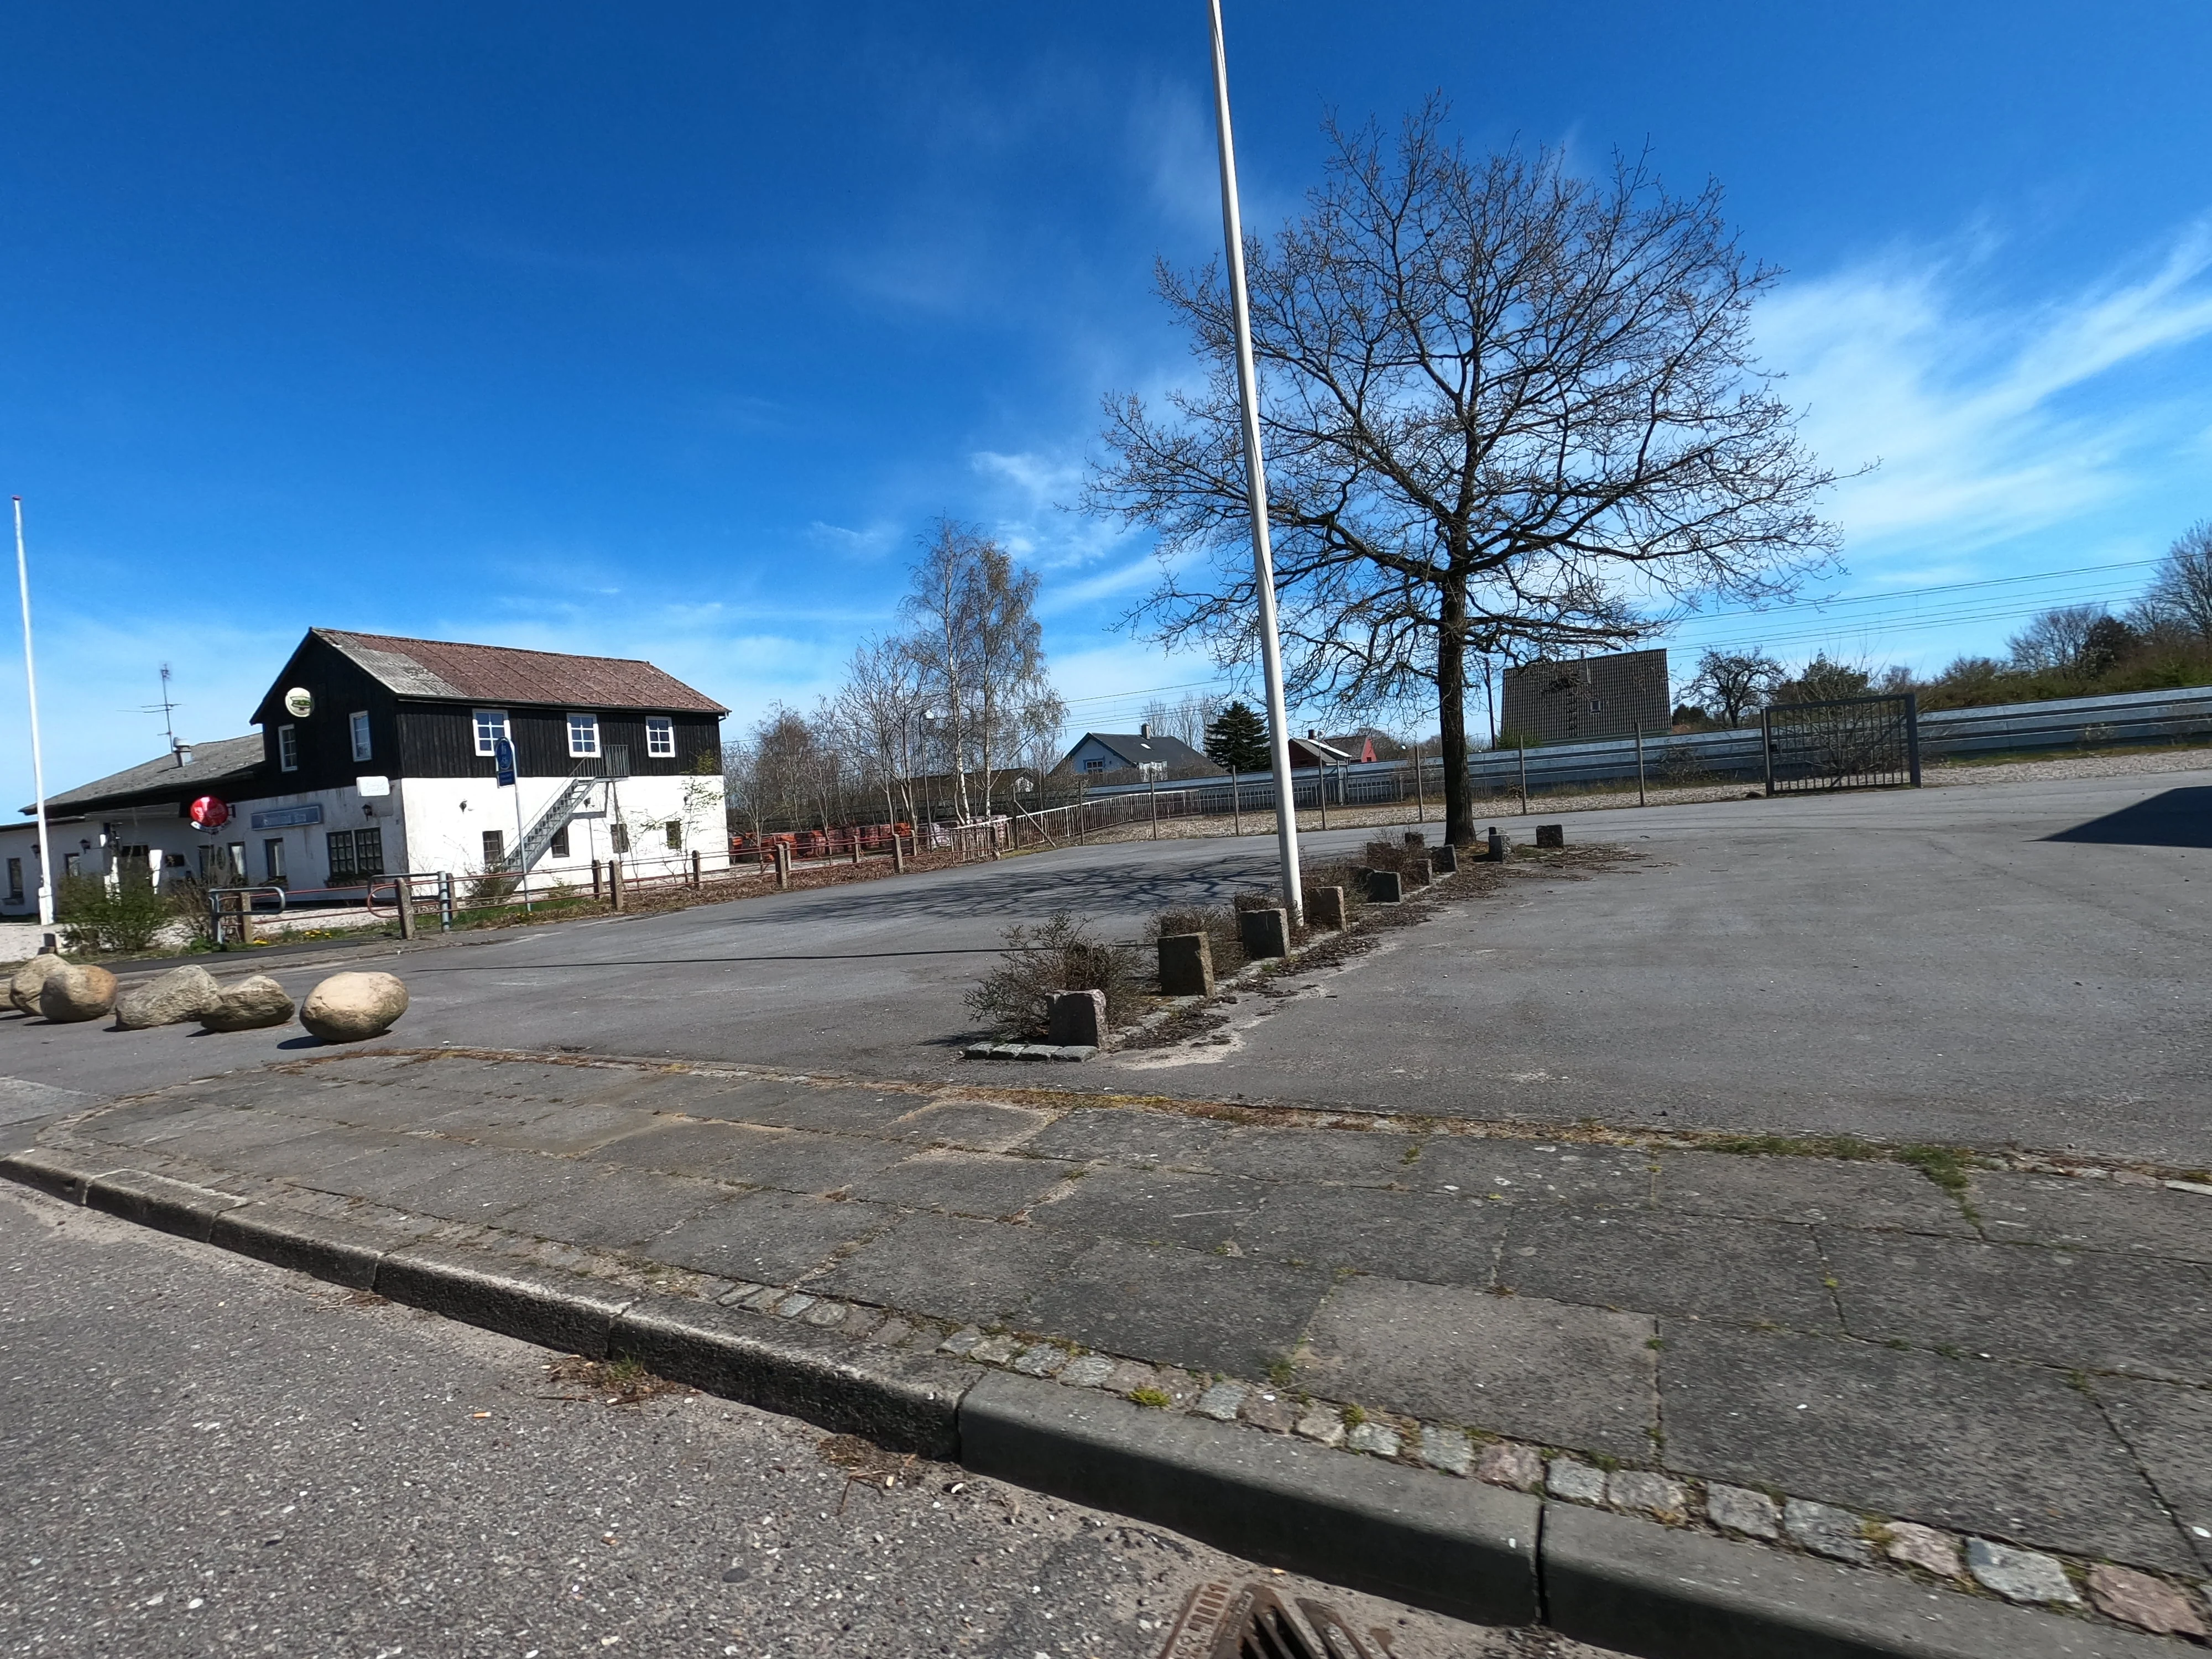 Billede af Hovslund Stationsby Trinbræt - Trinbræt er nedrevet, men Hovslund Stationsby Trinbræt har ligget her.